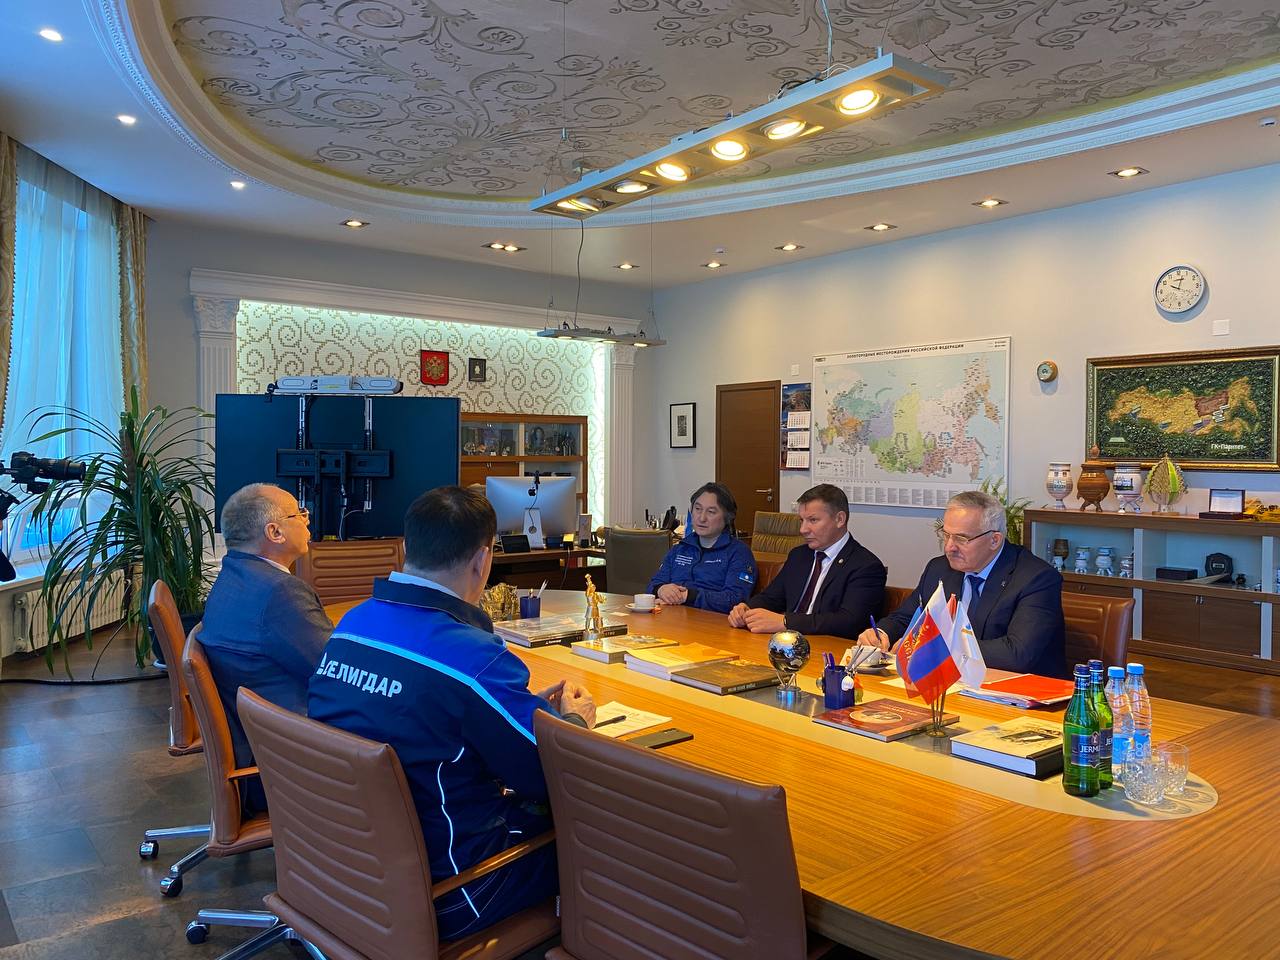 Джулустан Борисов обсудил планы развития добычи золота в Алданском районе